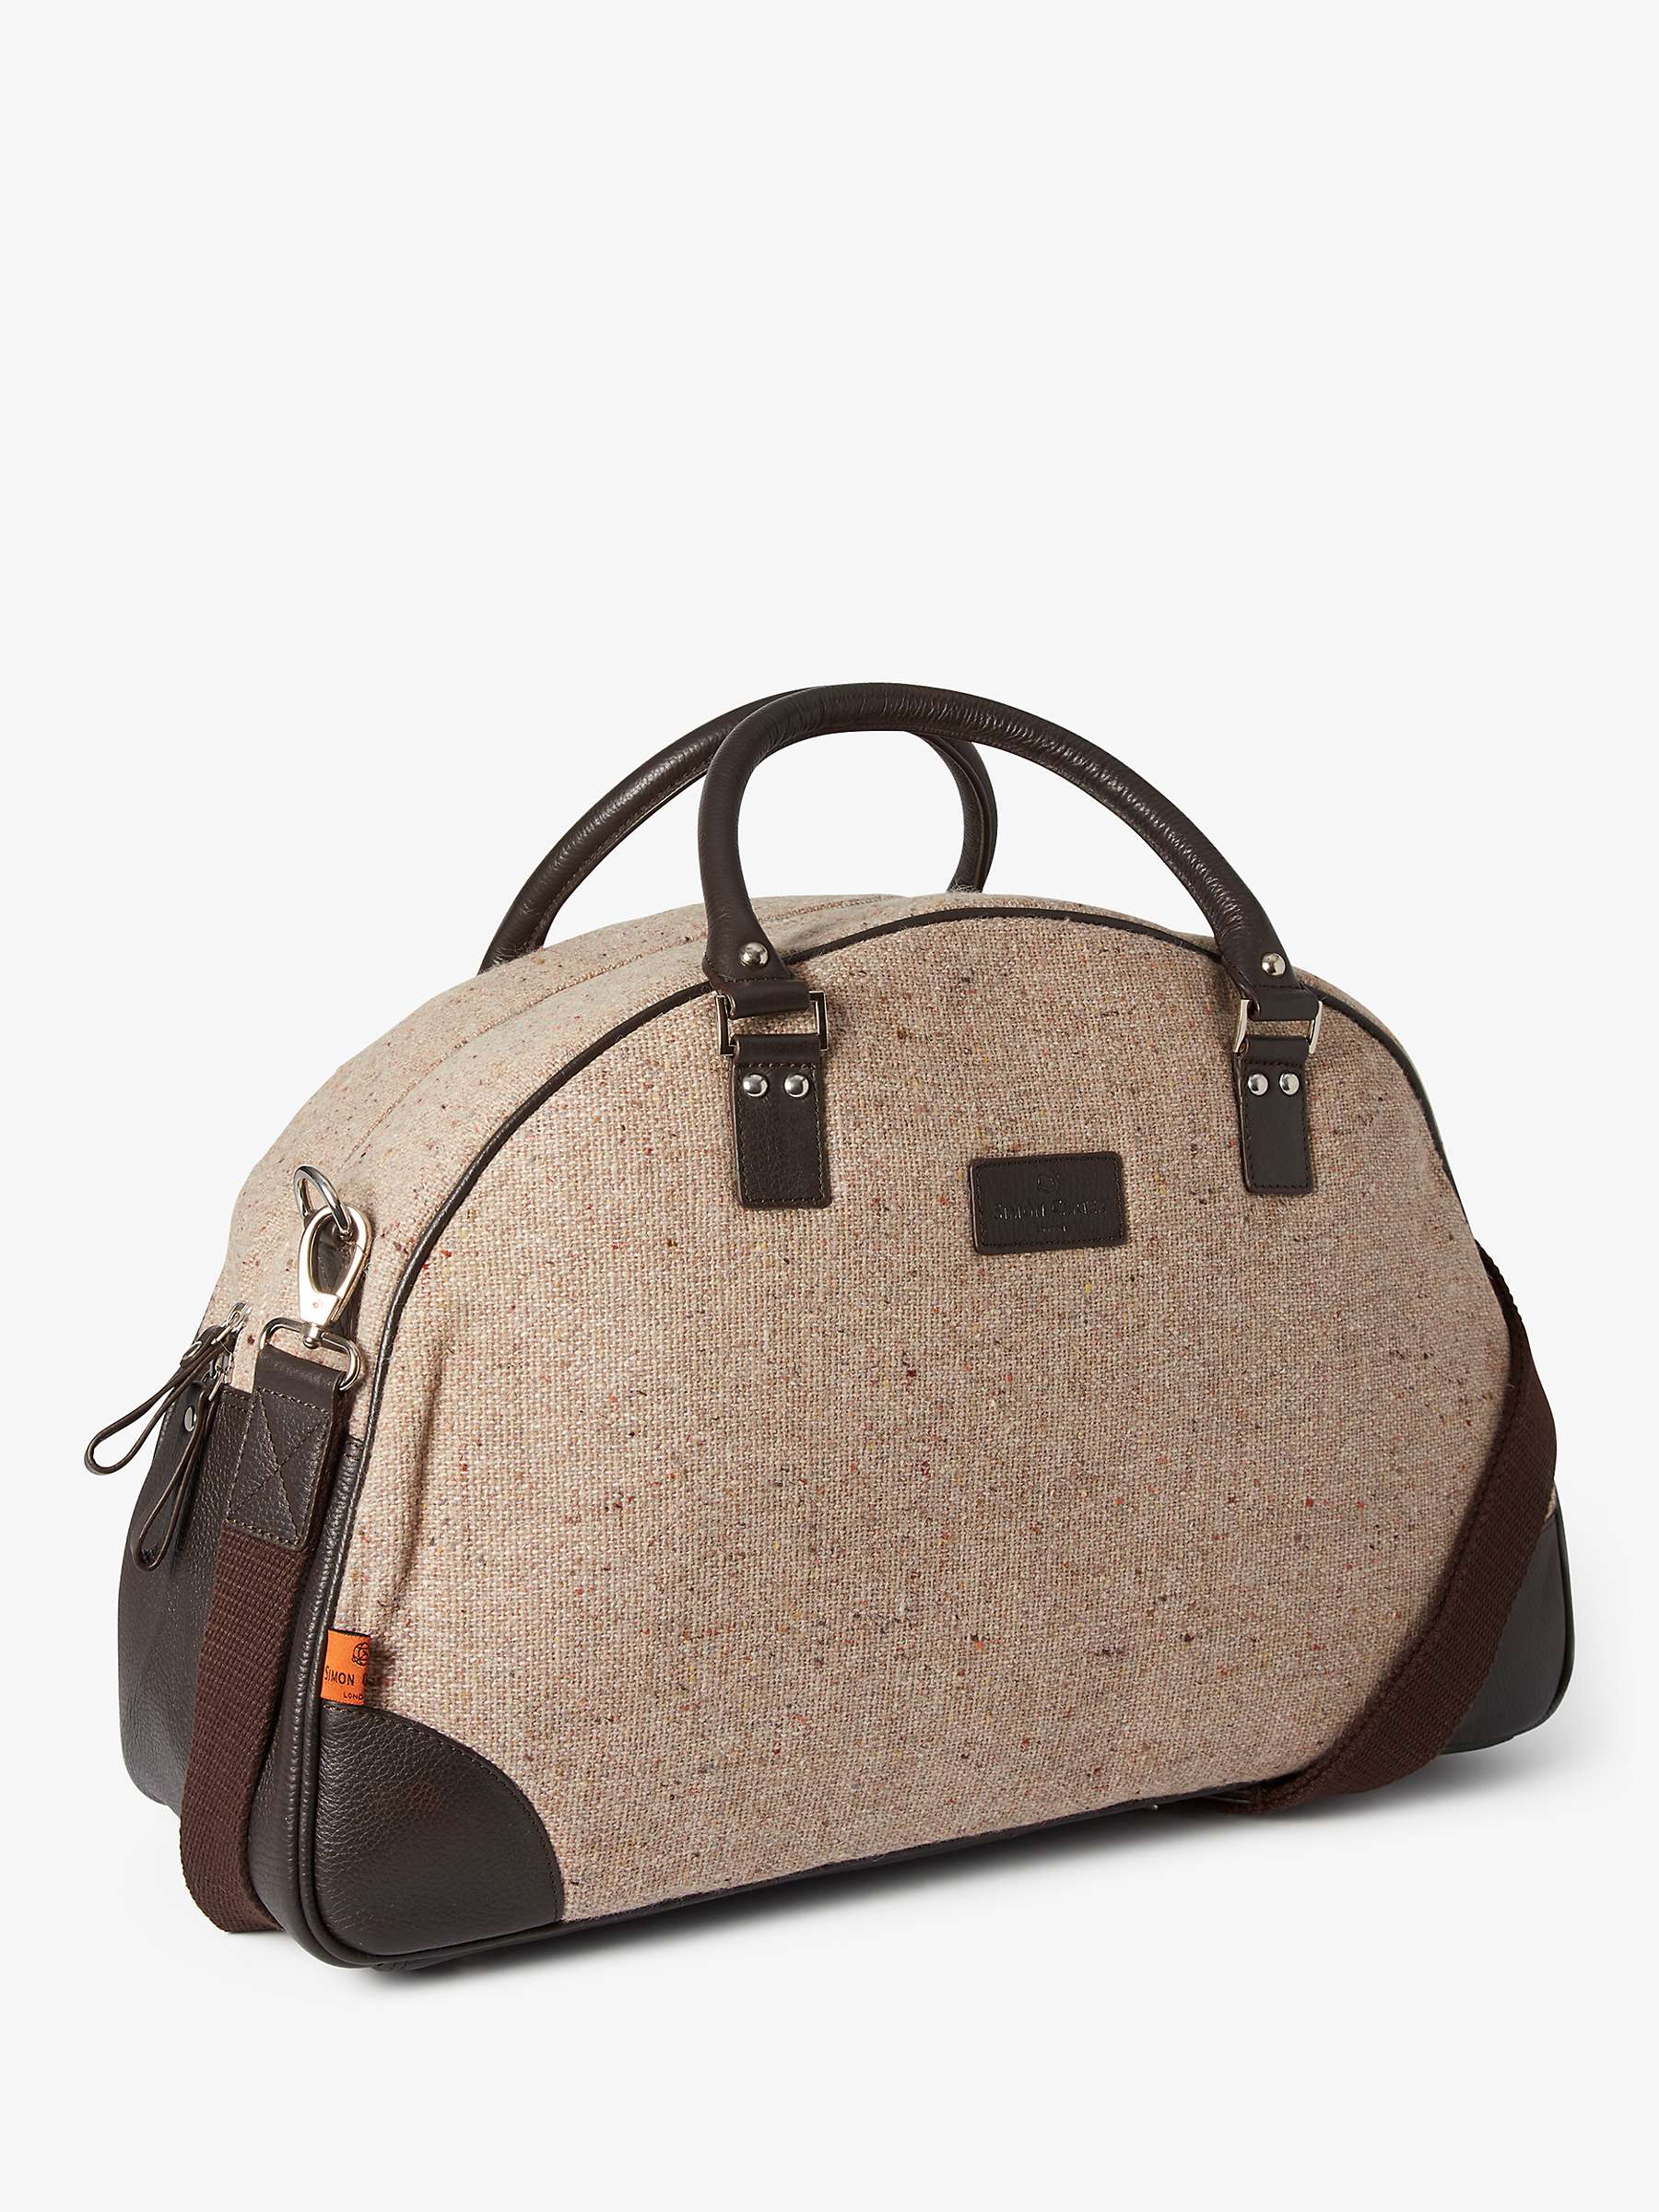 Buy Simon Carter Folkestone Tweed Bag, Beige/Brown Online at johnlewis.com